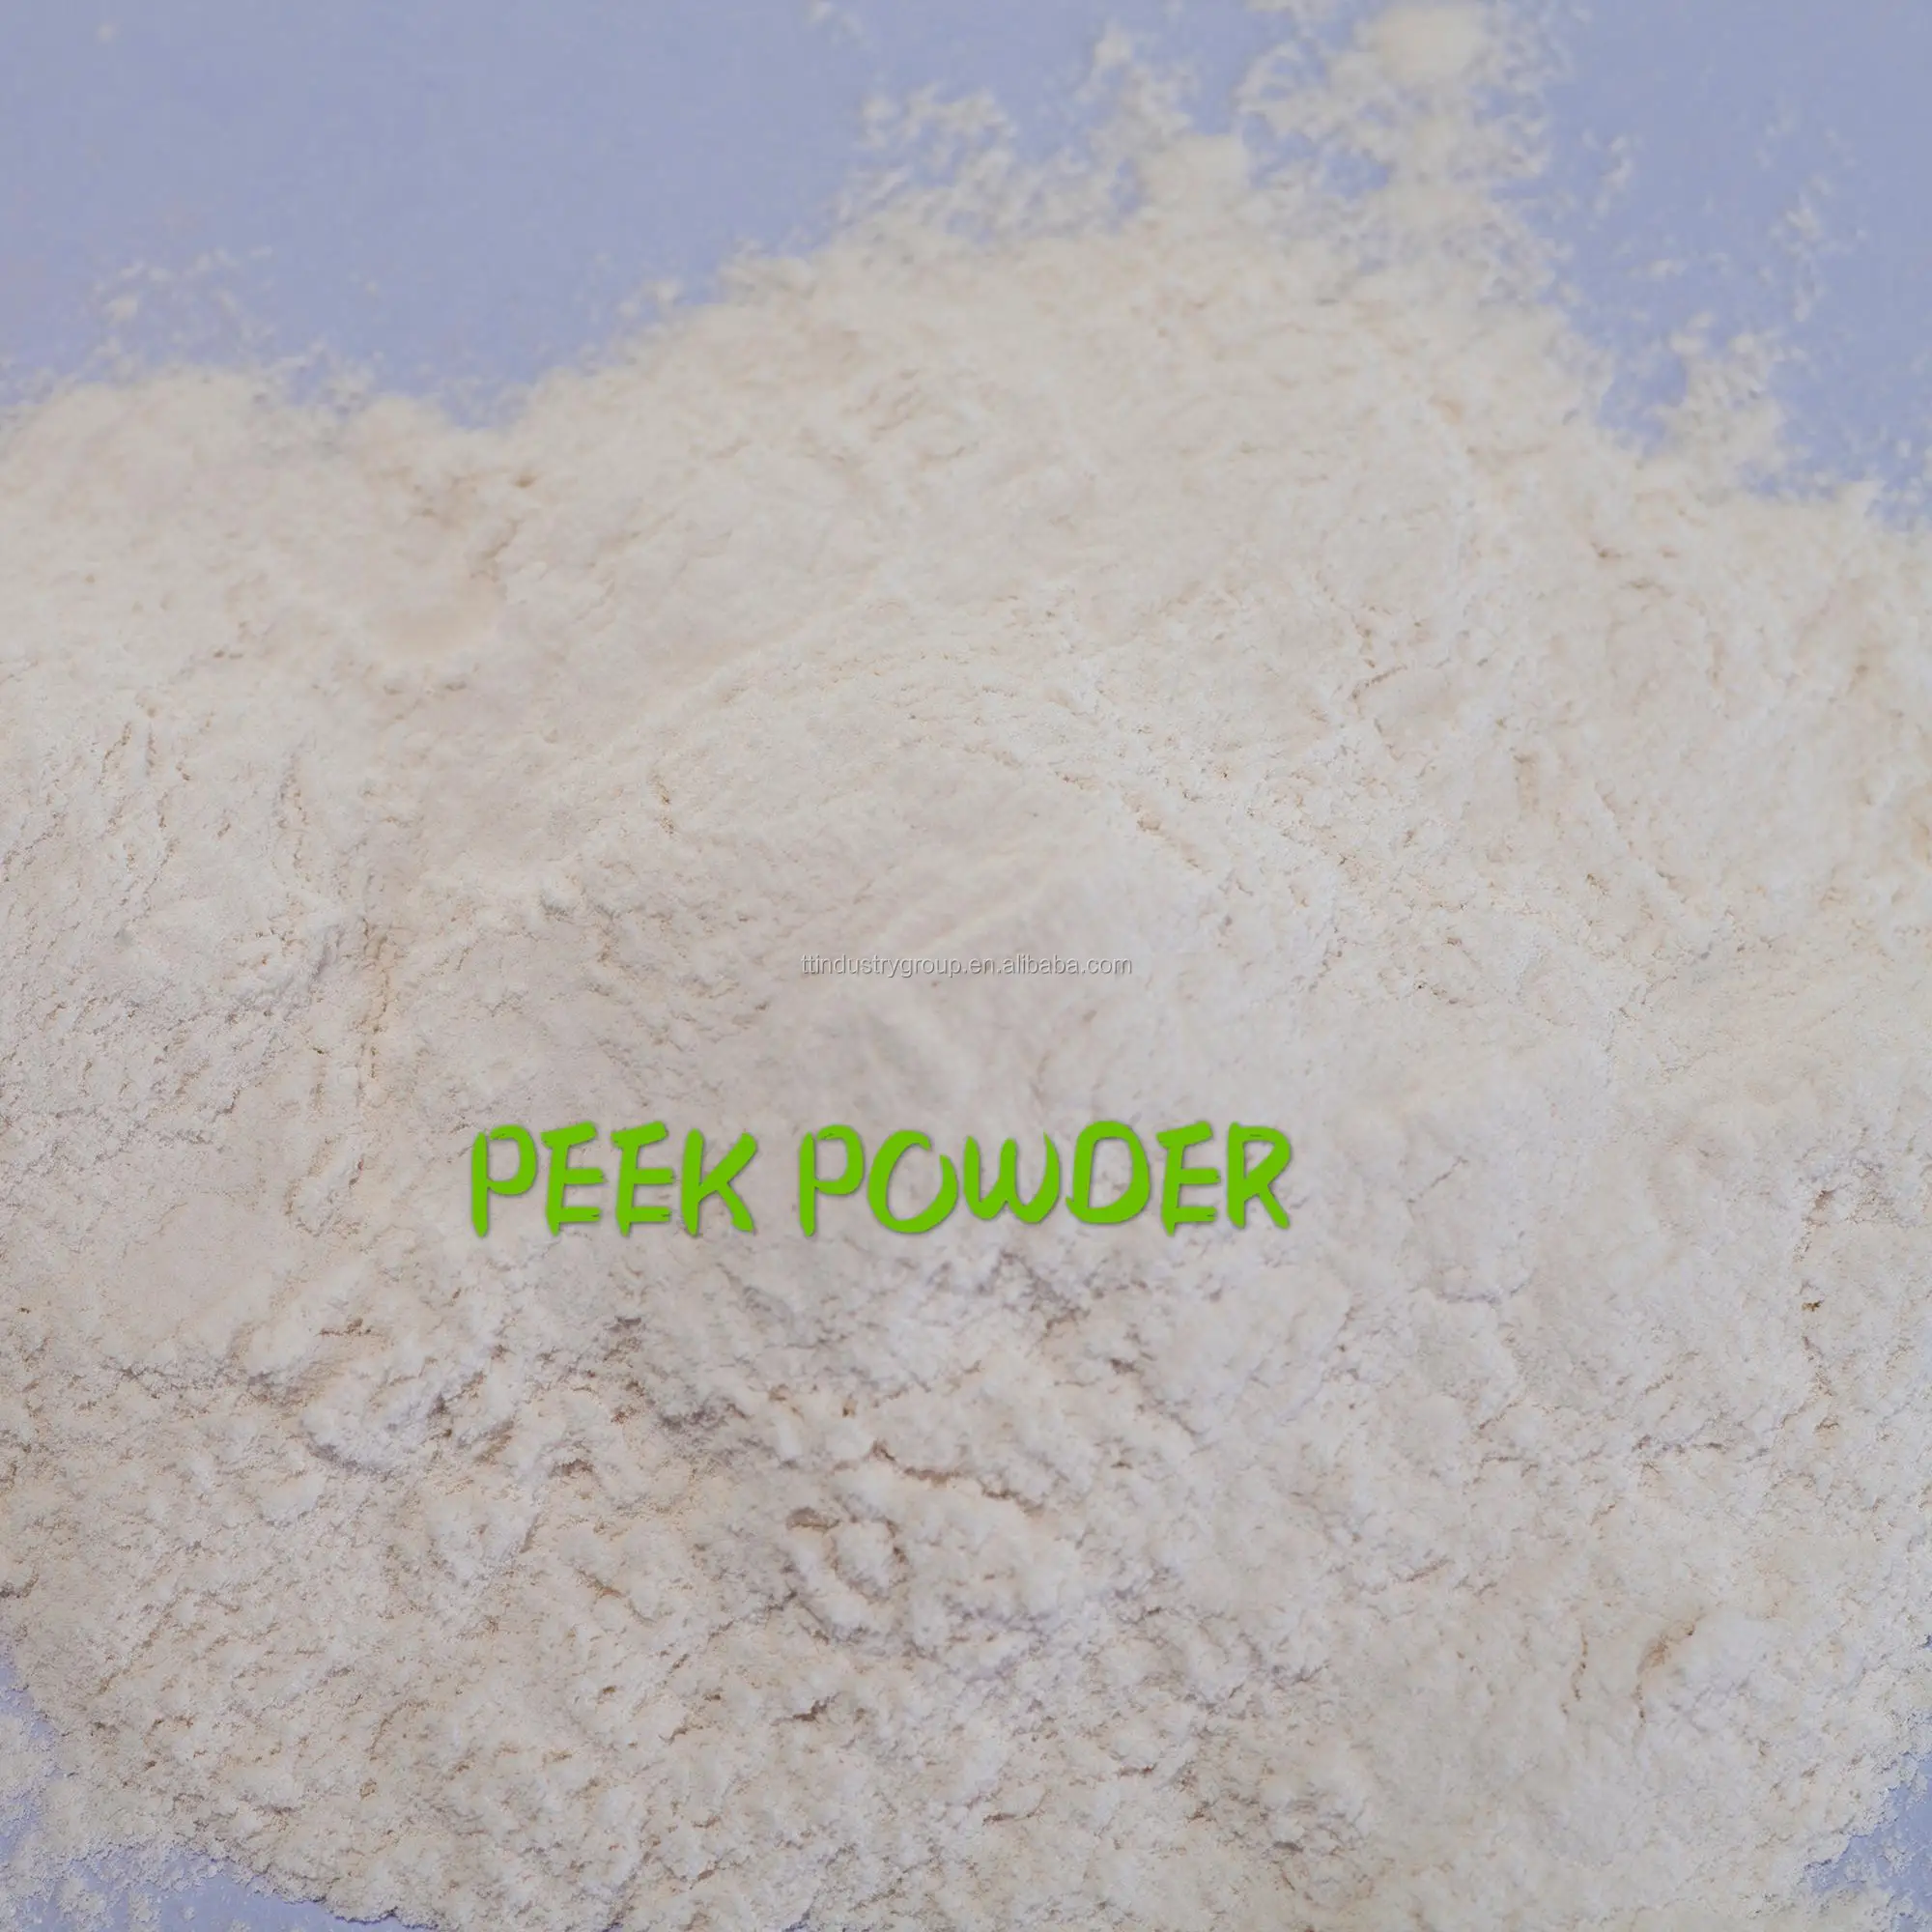 PEEK powder.jpg